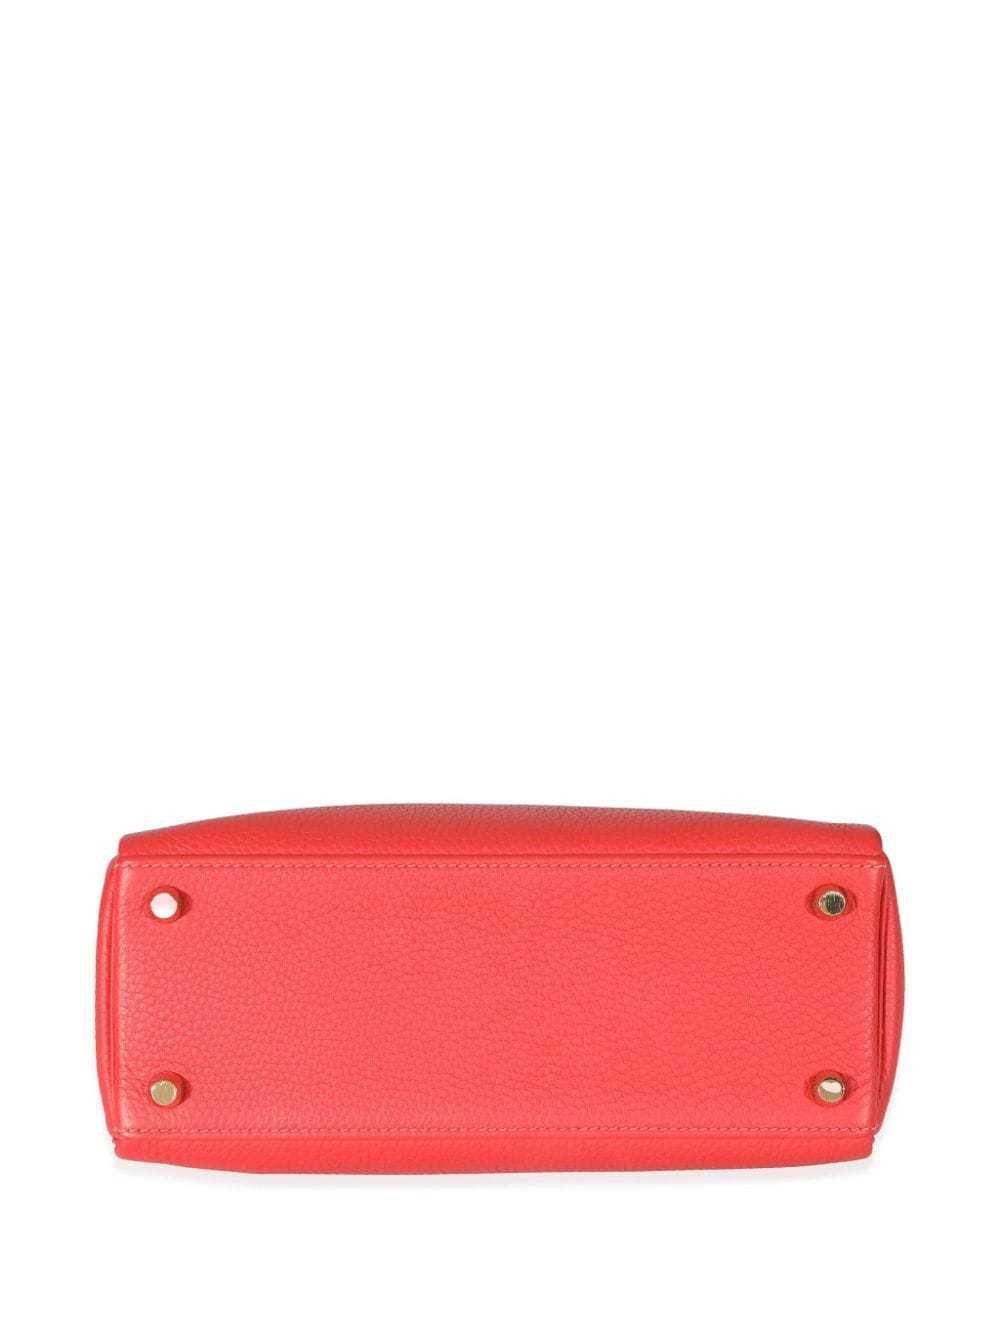 Hermès Pre-Owned 2014 Kelly 25 handbag - Red - image 5